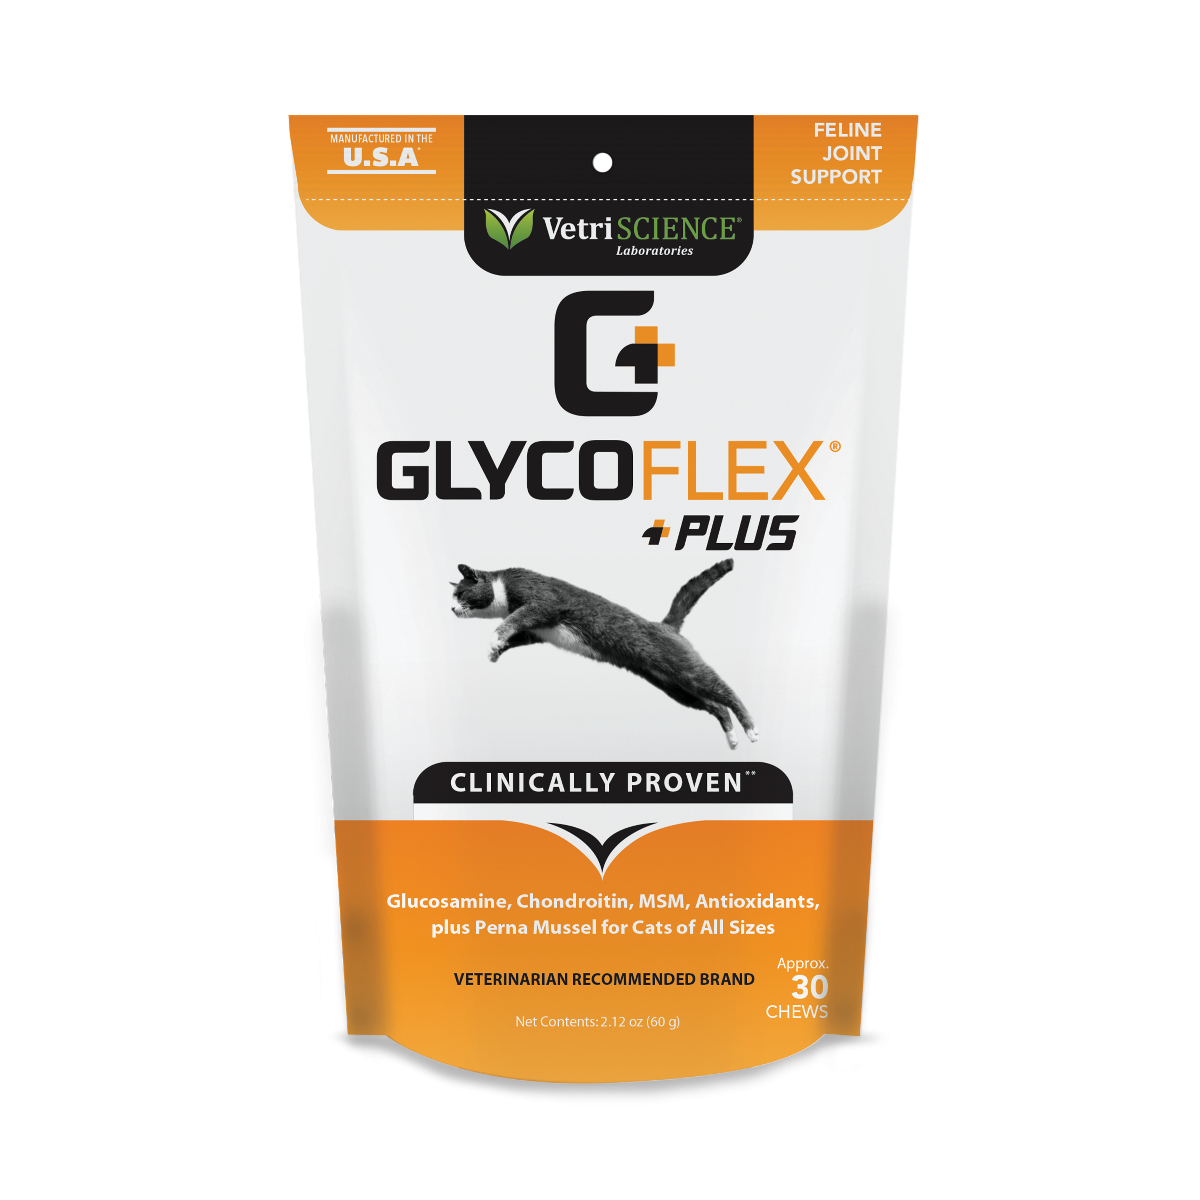 GLYCOFLEX® PLUS FOR CATS